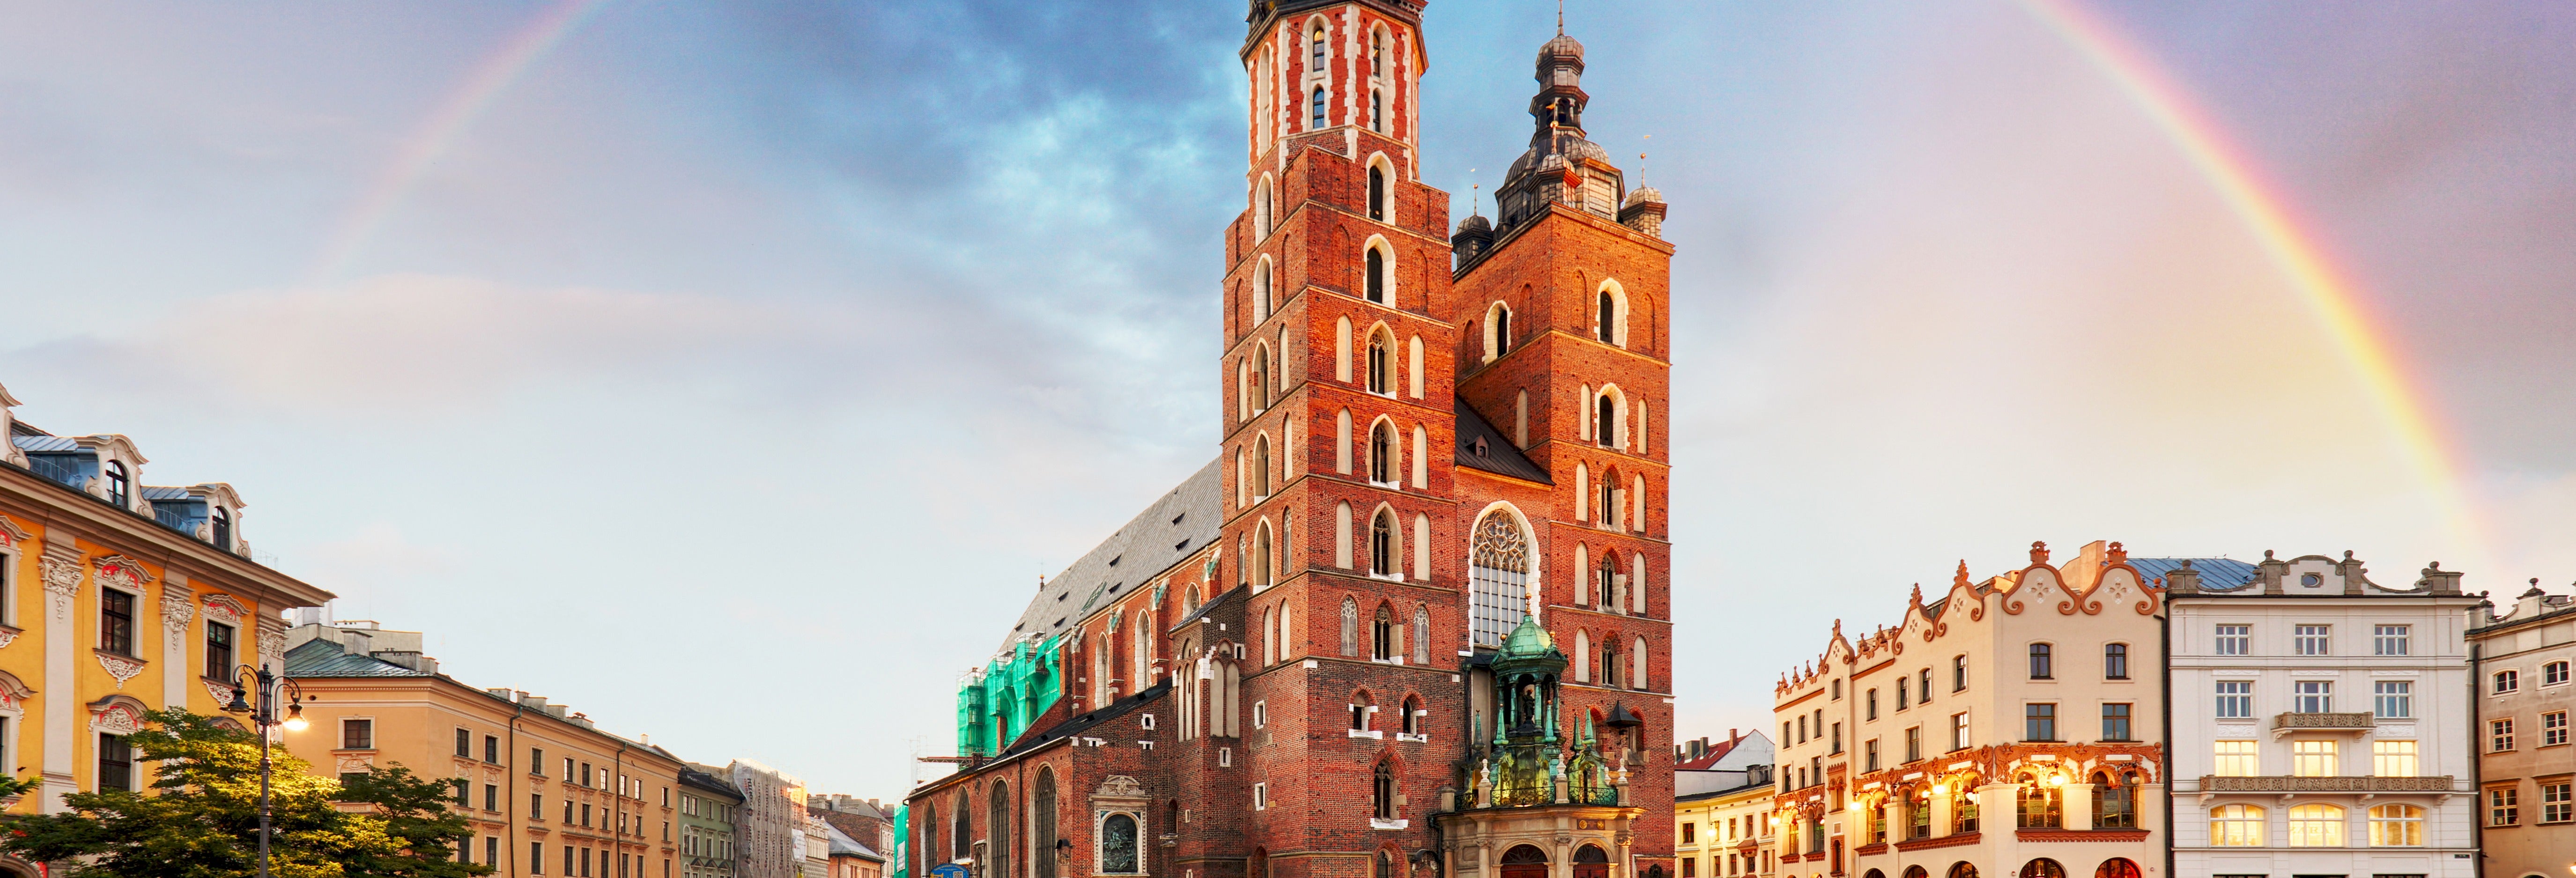 Free Walking Tour of Krakow